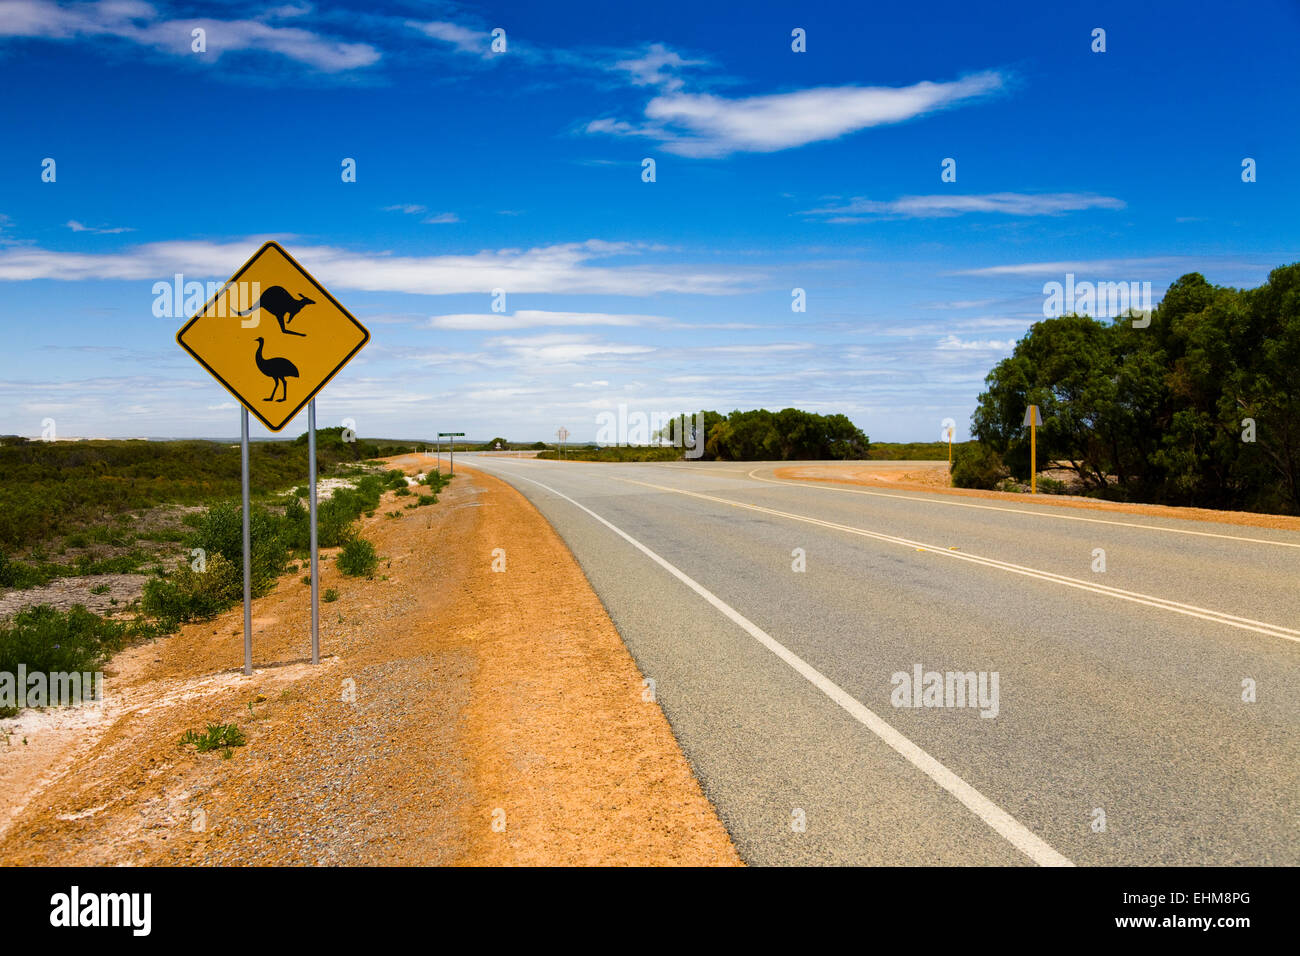 Panneau routier australien typique, l'ouest de l'Australie Banque D'Images